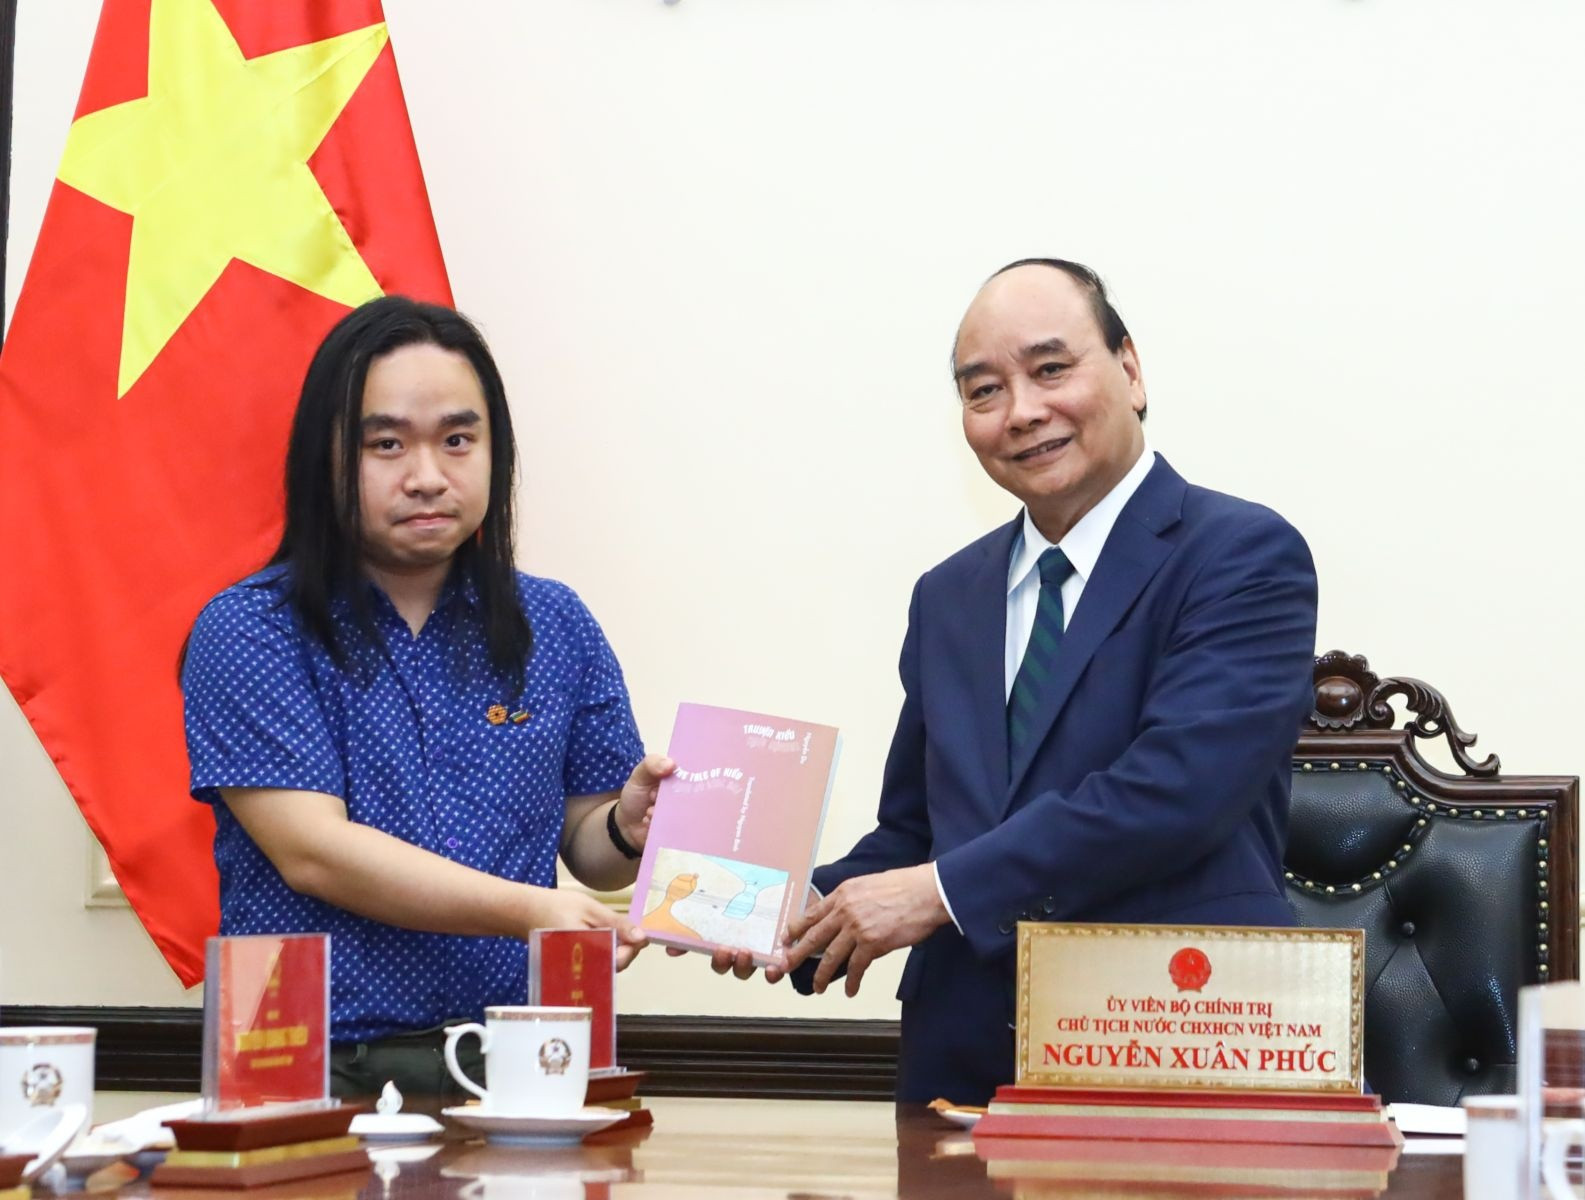 Chủ tịch nước gặp du học sinh dịch 'Truyện Kiều' của Nguyễn Du sang tiếng Anh - ảnh 2